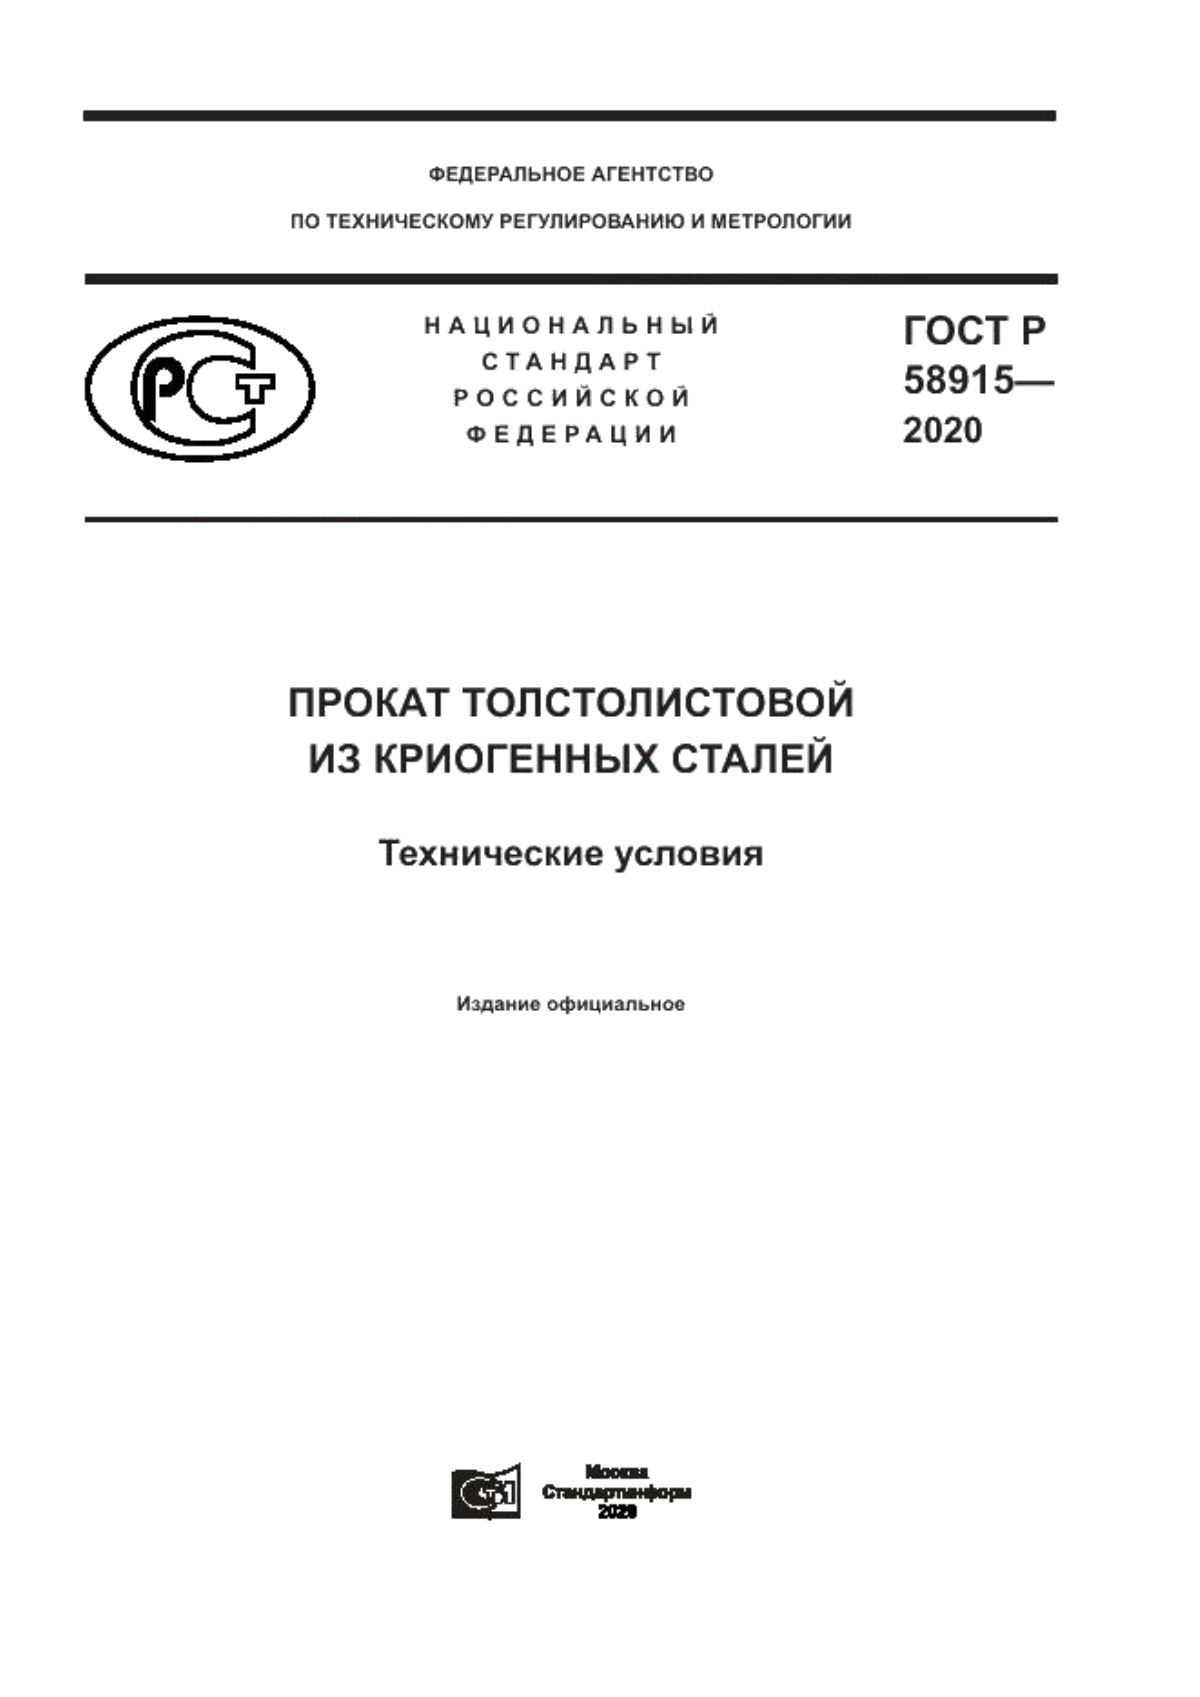 ГОСТ Р 58915-2020 Прокат толстолистовой из криогенных сталей. Технические условия